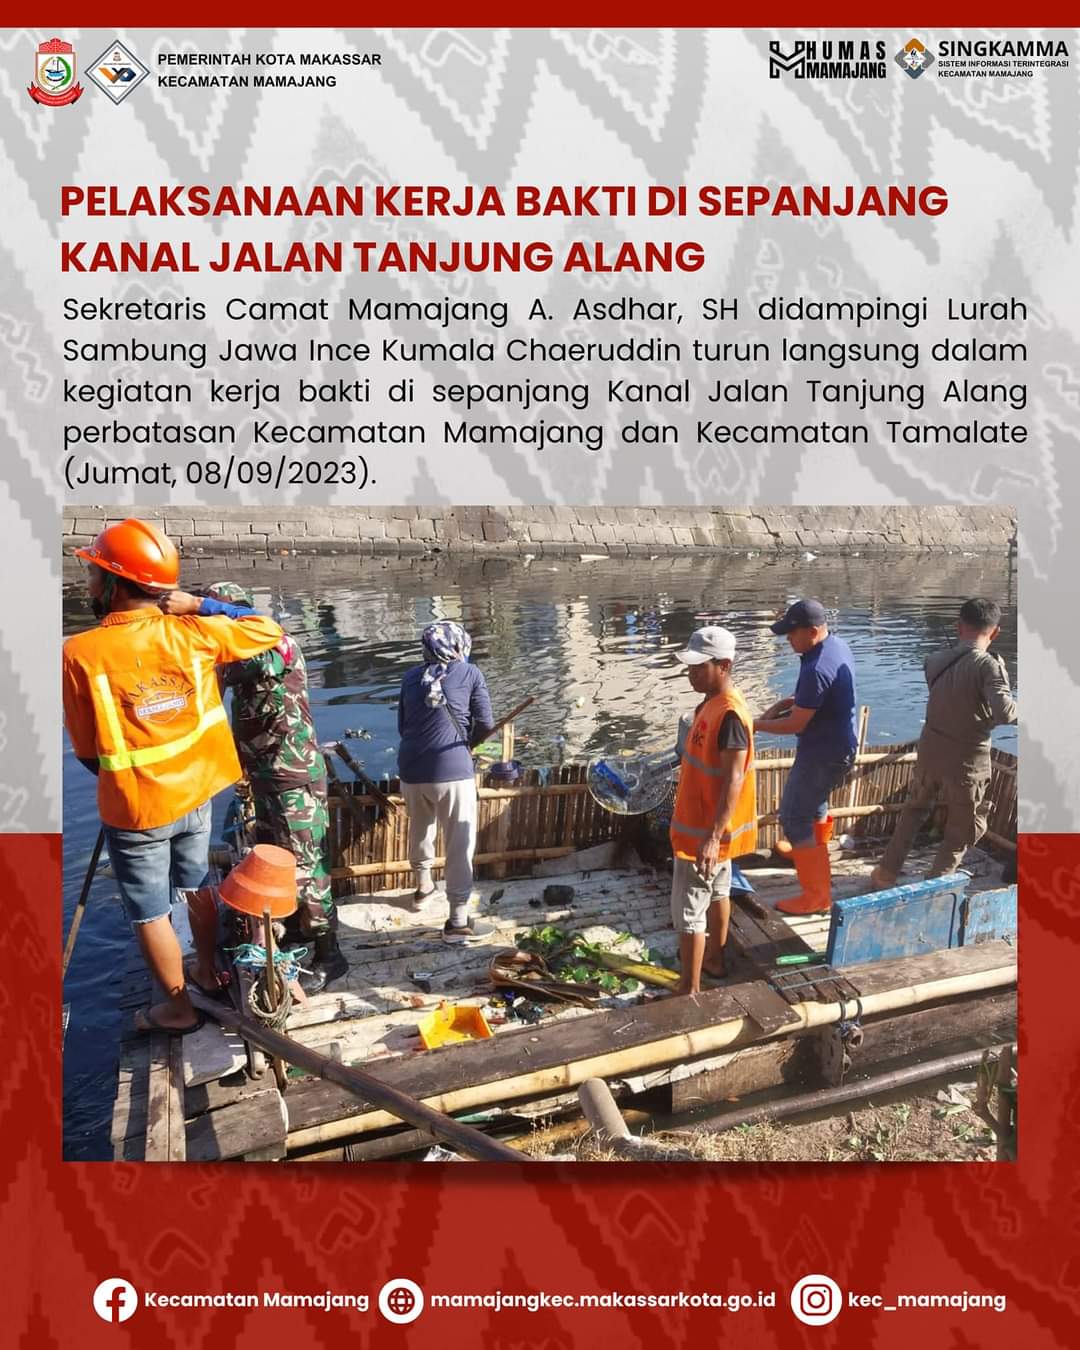 Gambar Sekretaris Camat Mamajang A. Asdhar SH Turun langsung Dalam Kegiatan Kerja bakti Di sepanjang Kanal Tanjung Alang Kel Sambung Jawa